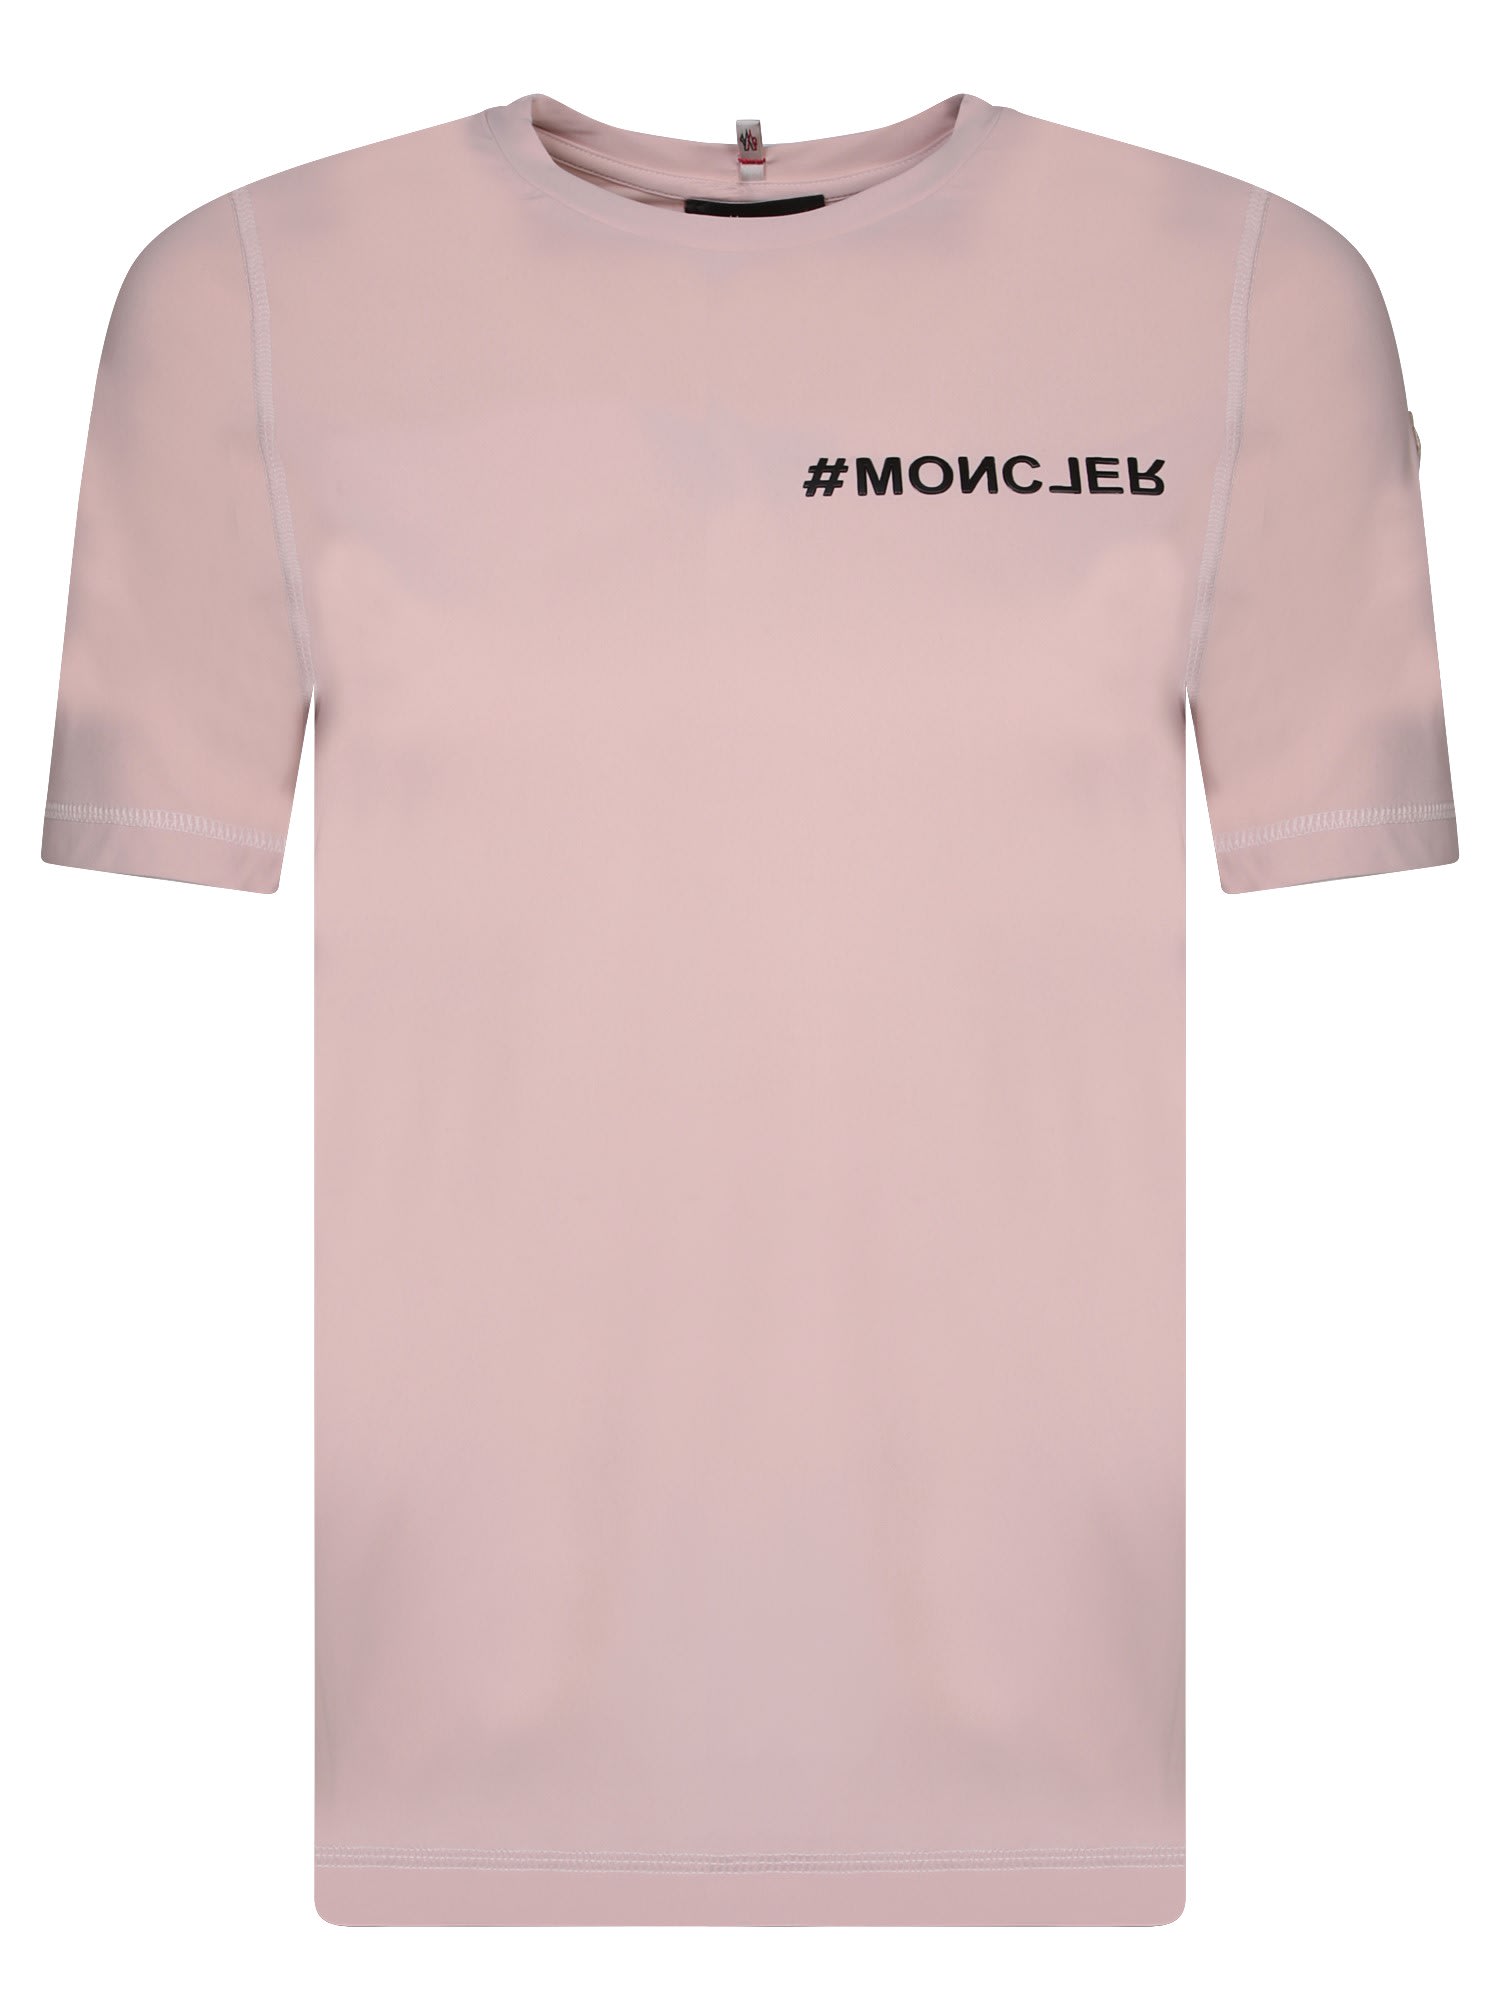 Moncler Logo T-shirt In Pink